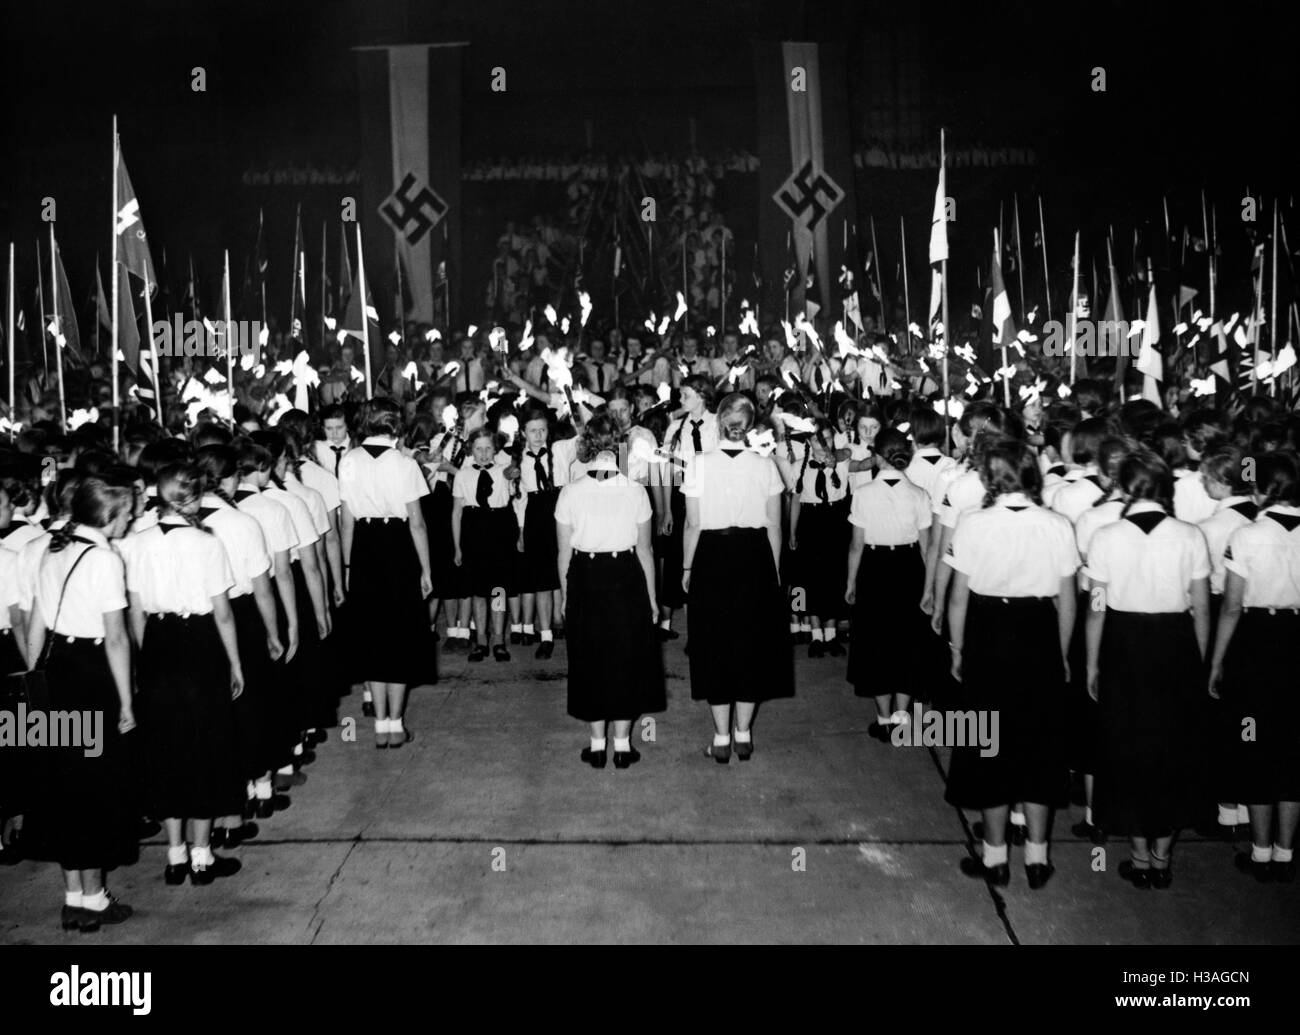 El compromiso de los líderes en la BDM Museo Pergamon, 1938 BDM: dirigentes, escuelas de liderazgo Foto de stock